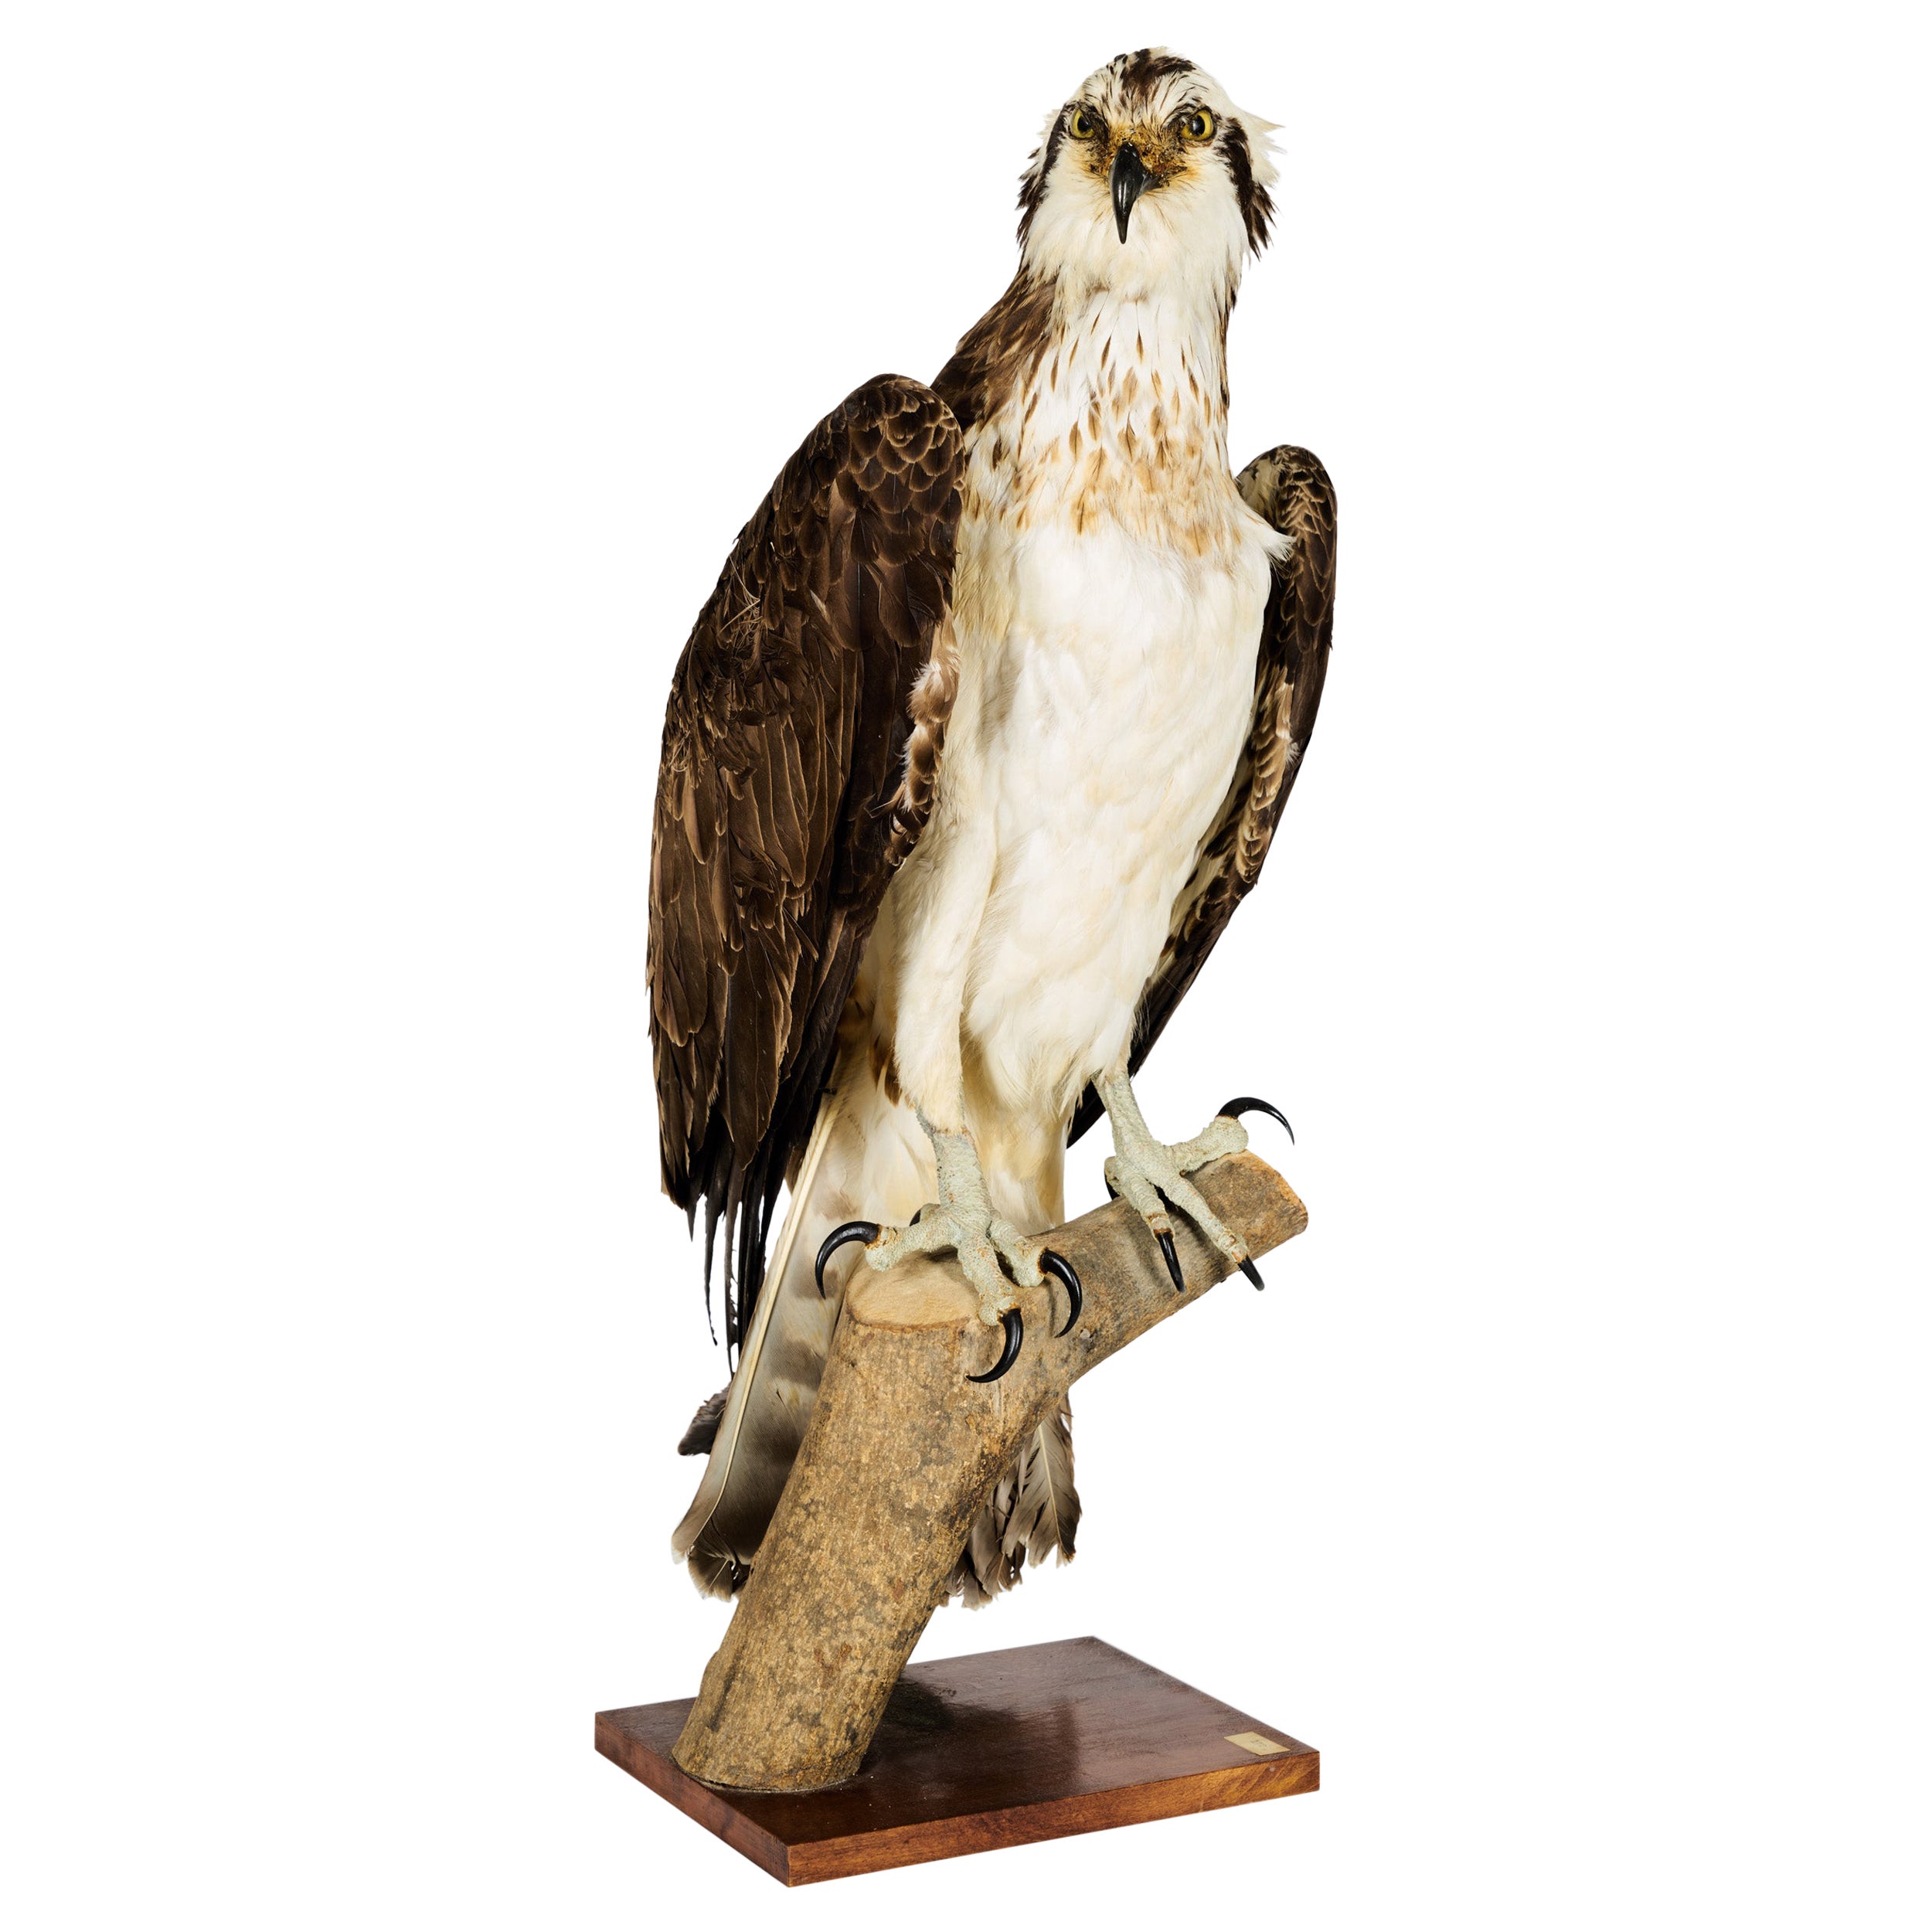 Westerne Osprey or Fish Hawk 'Pandion Haliaetus', Cites II/A dd 10/03/2